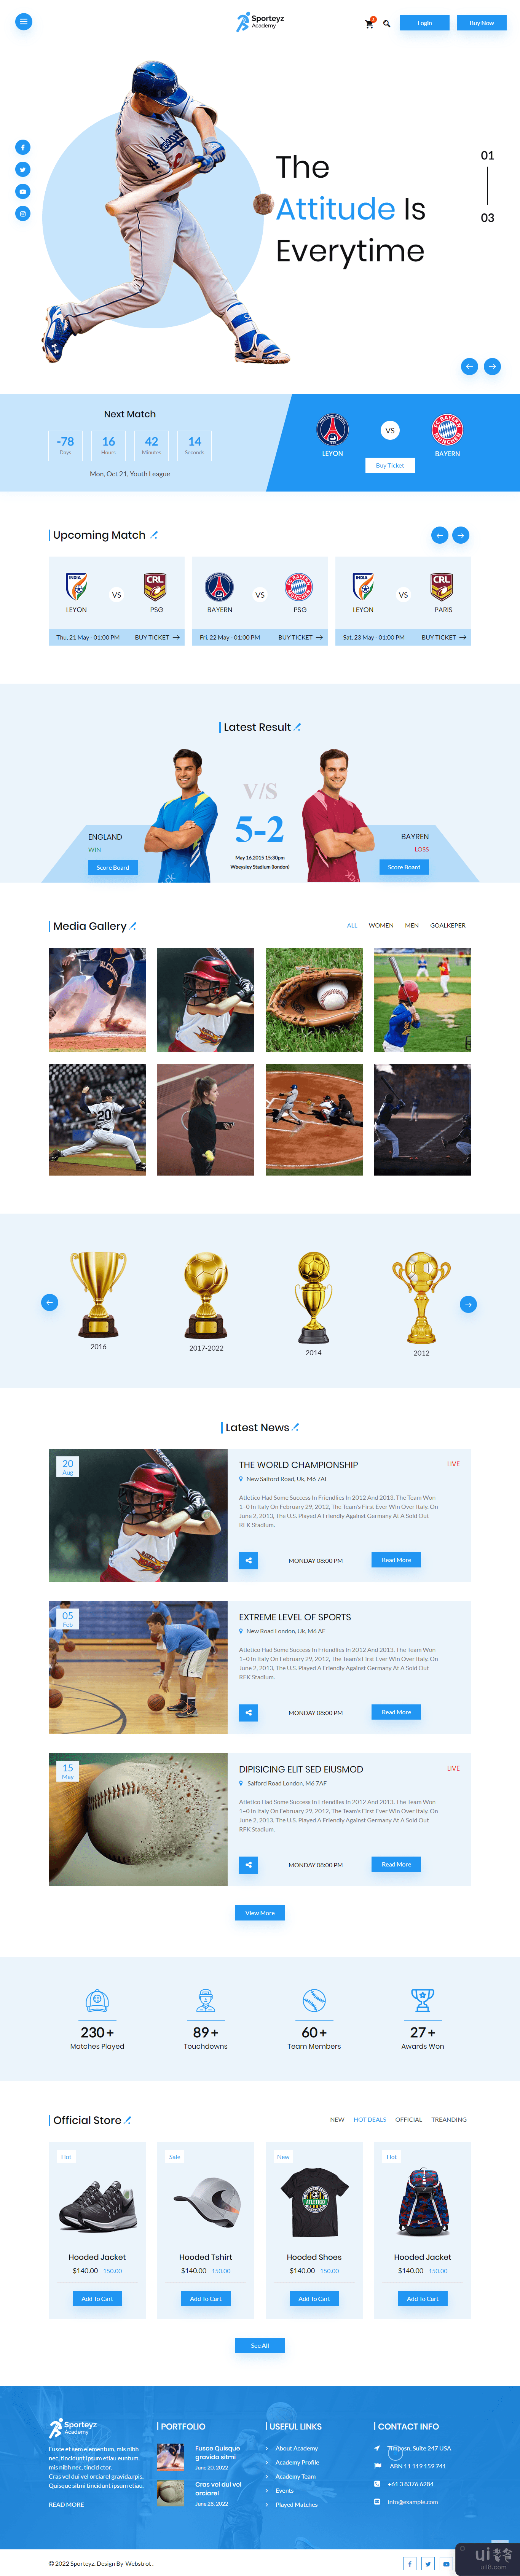 棒球 HTML 模板(Baseball HTML Template)插图2